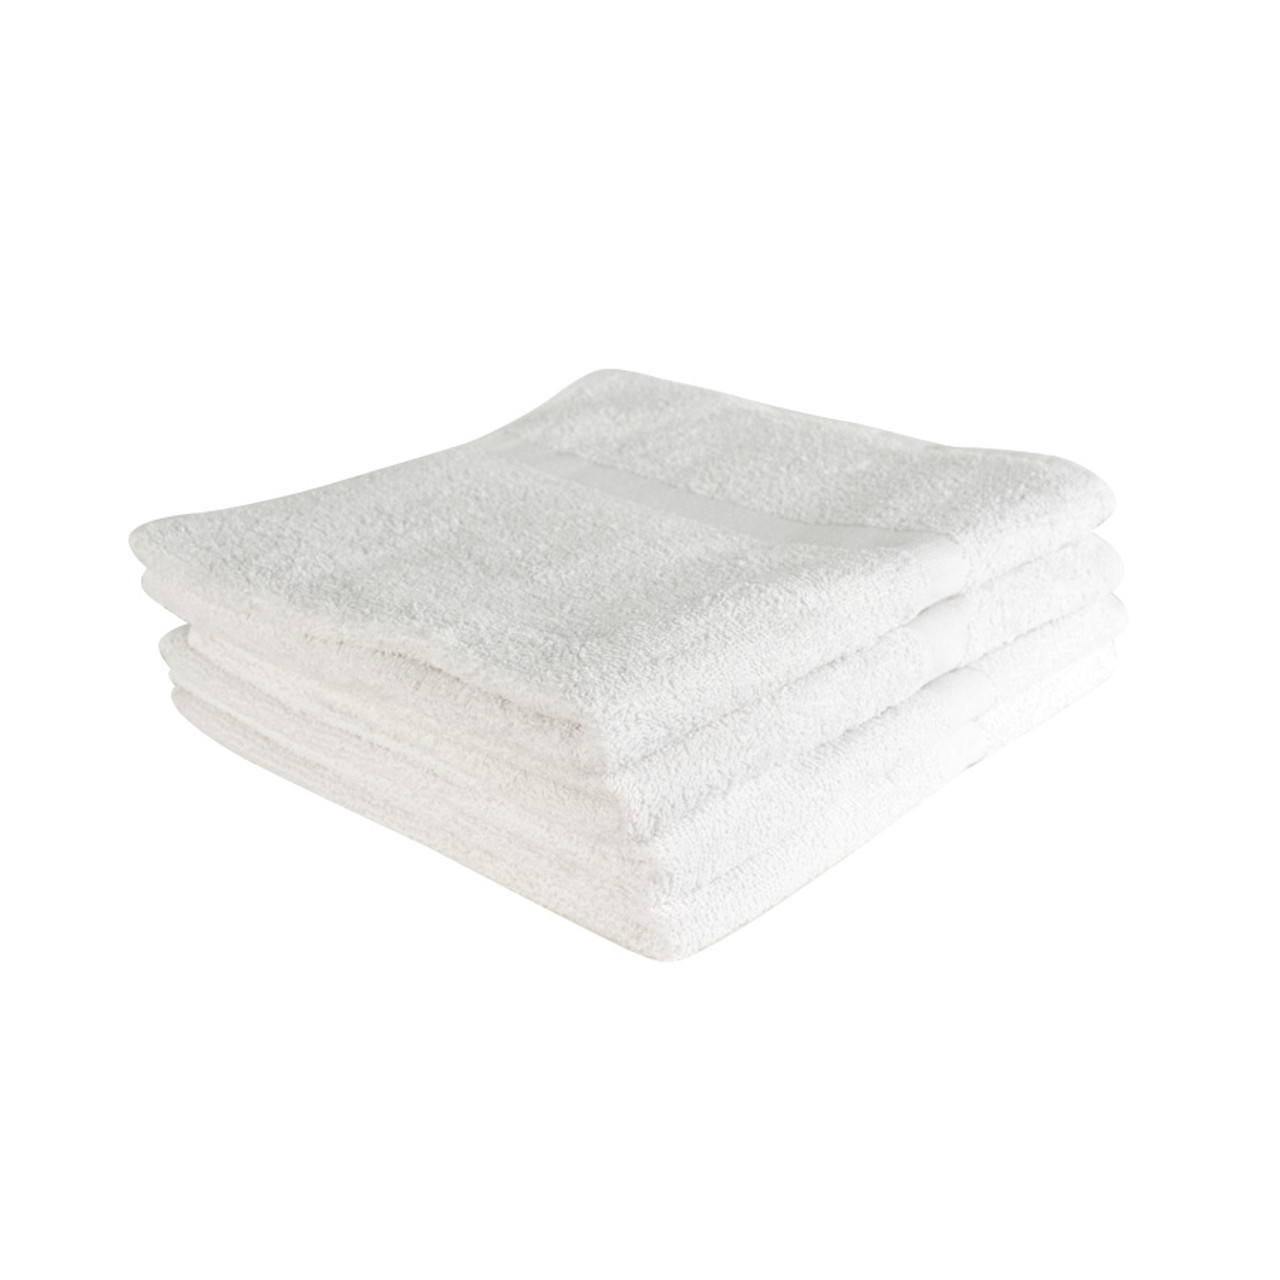 22X44 Wholesale Premium Black Towels - Towel Super Center